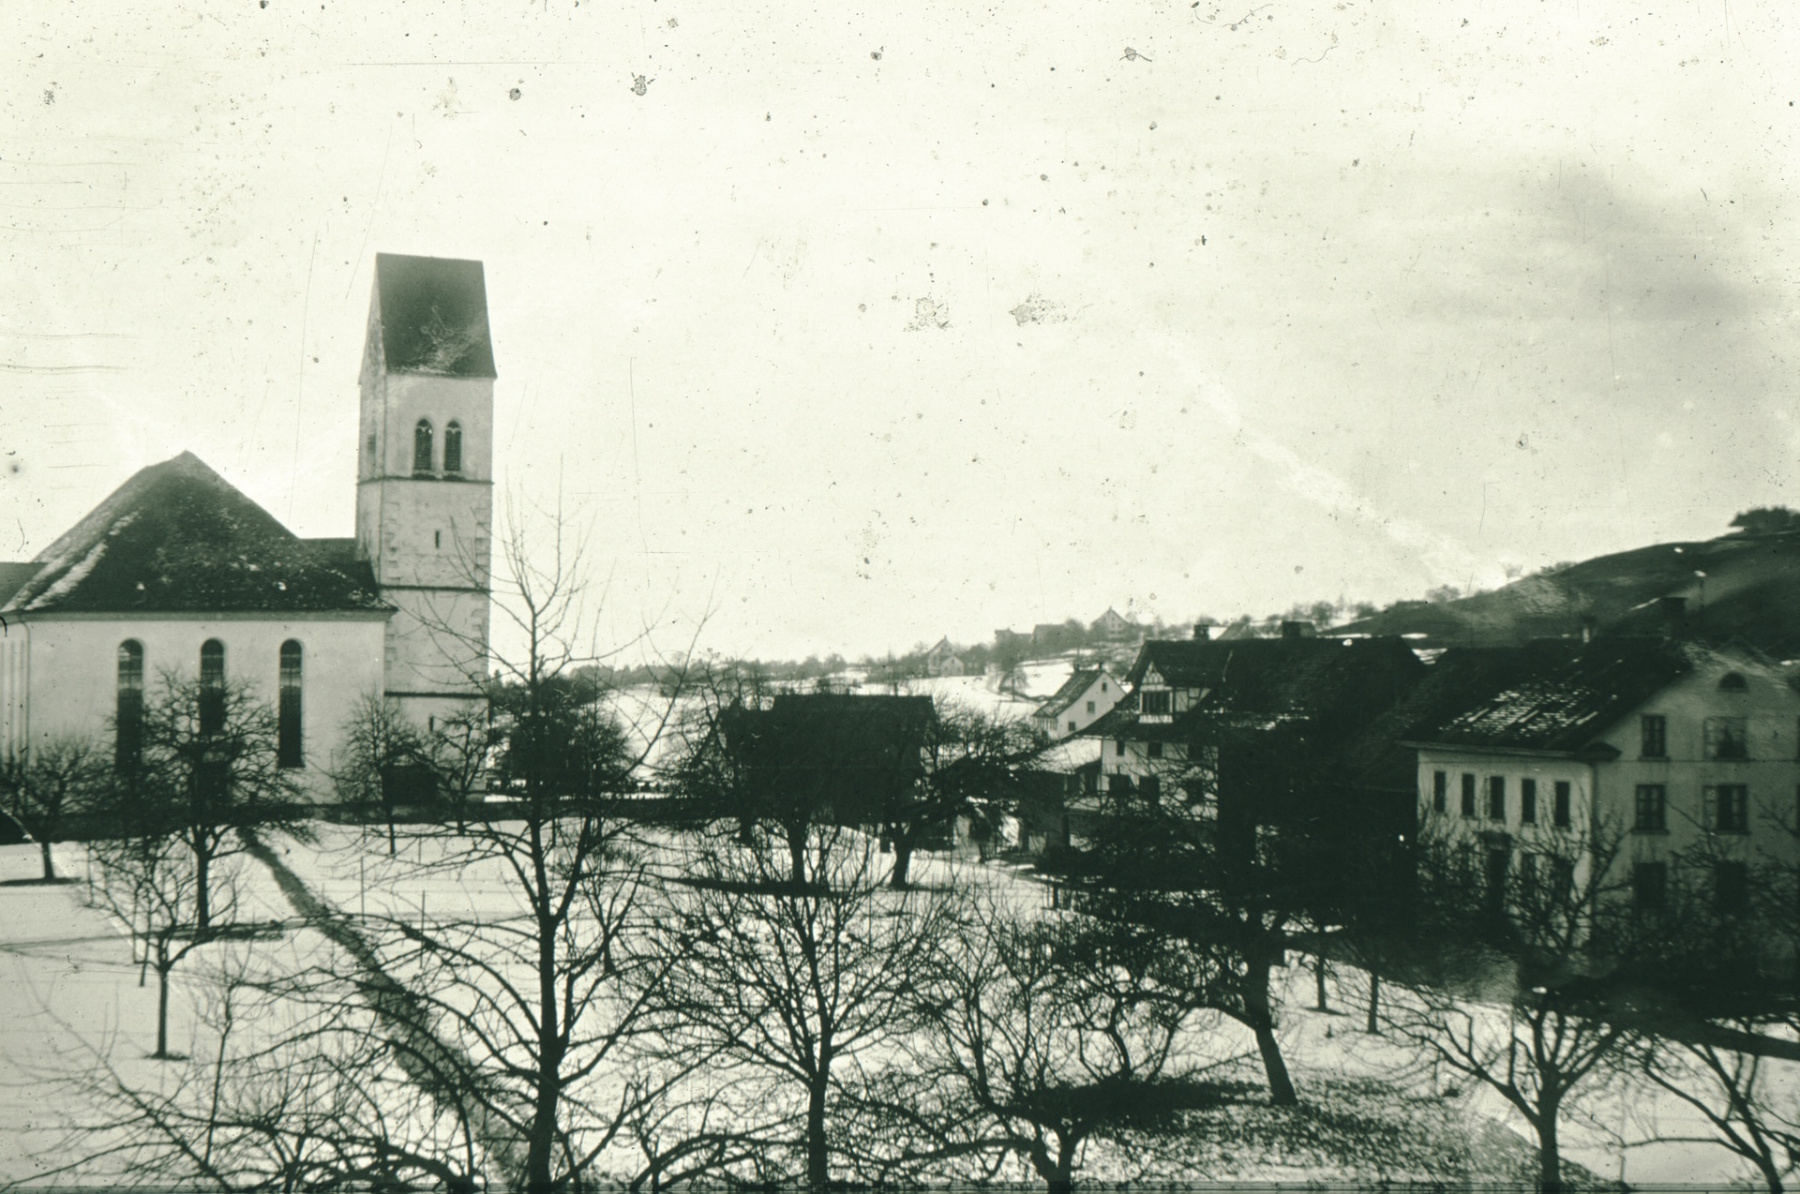 Ref. Kirche von der Baumastrasse aus. Der «schiefe Turm» ist schon seit mehr als 100 Jahren augenfällig. Julius Studer weiss bereits 1870, dass der Kirchturm ca. 1 Meter nach Norden hängt.